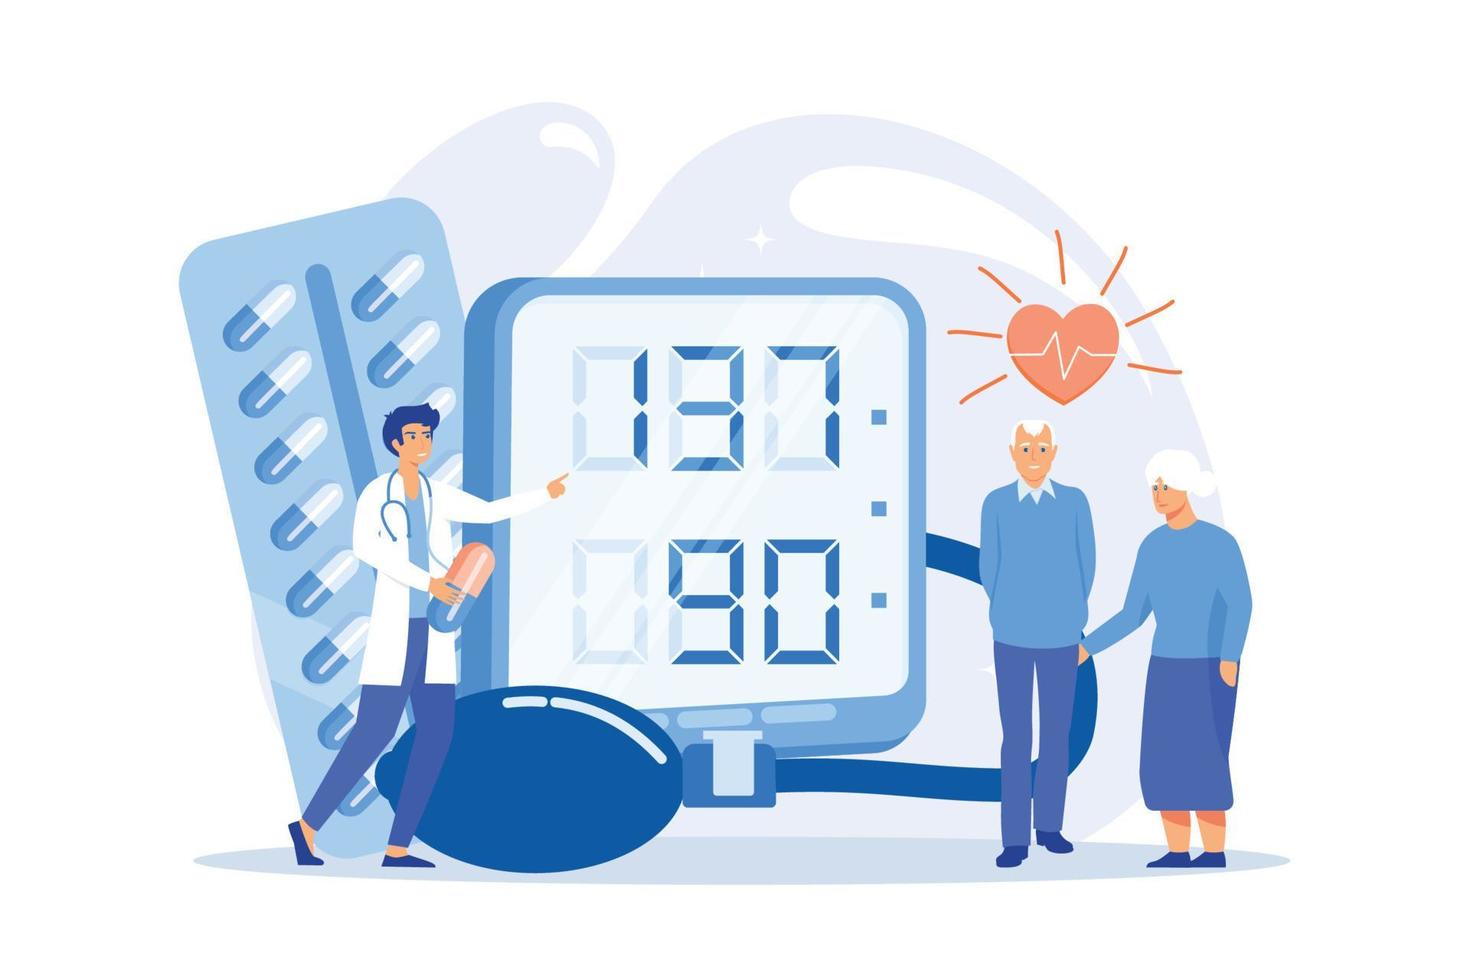 médico, casal de idosos no tonometer hight pressão arterial, pessoas pequenas. pressão alta, doença de hipertensão, conceito de controle de pressão arterial. vetor